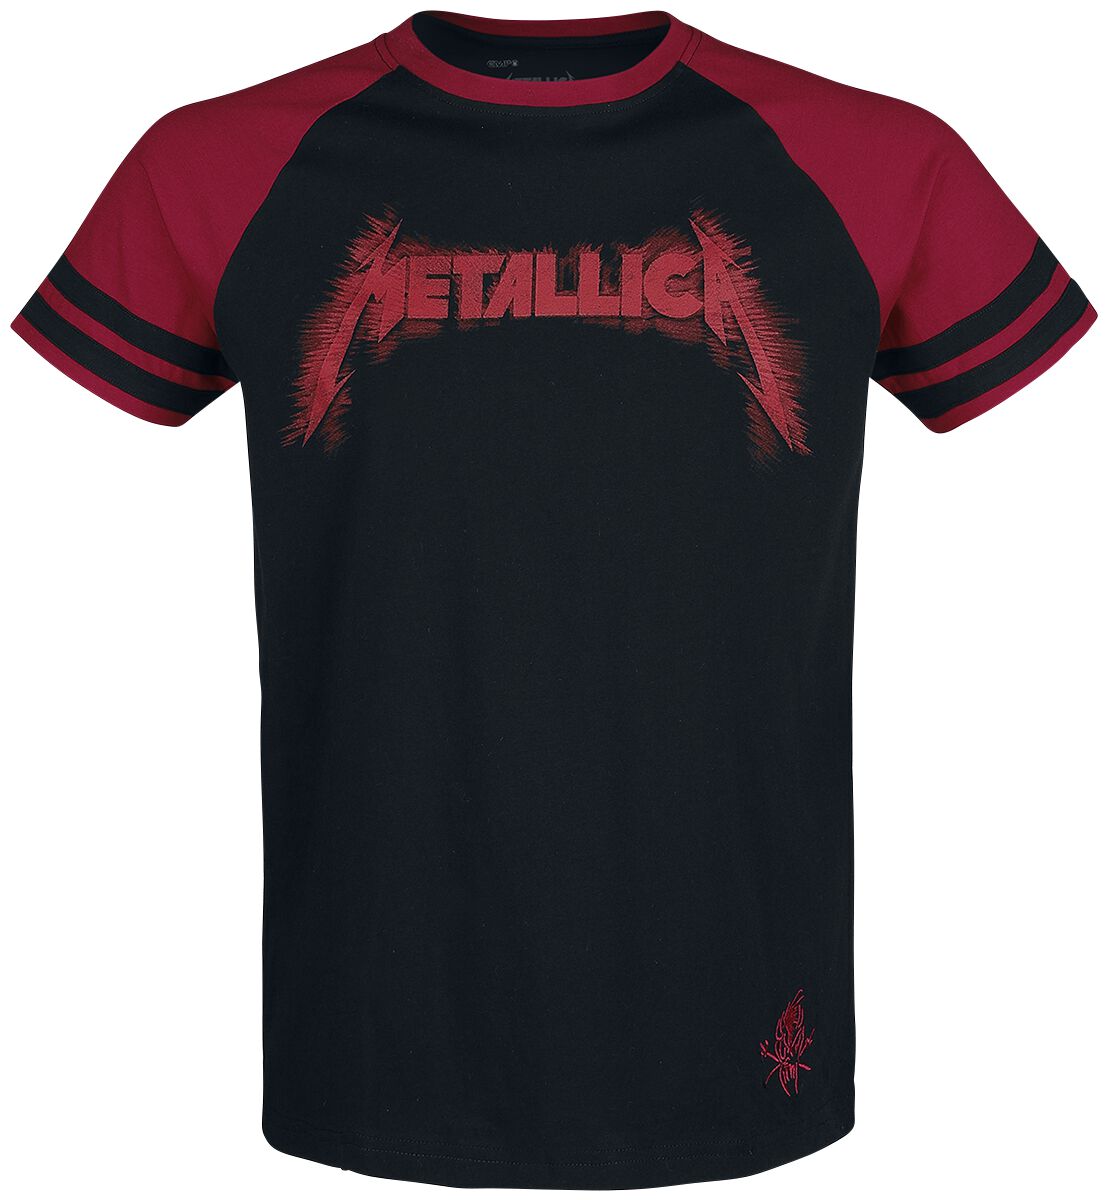 Metallica T-Shirt - EMP Signature Collection - M bis 3XL - für Männer - Größe M - schwarz/rot  - EMP exklusives Merchandise!